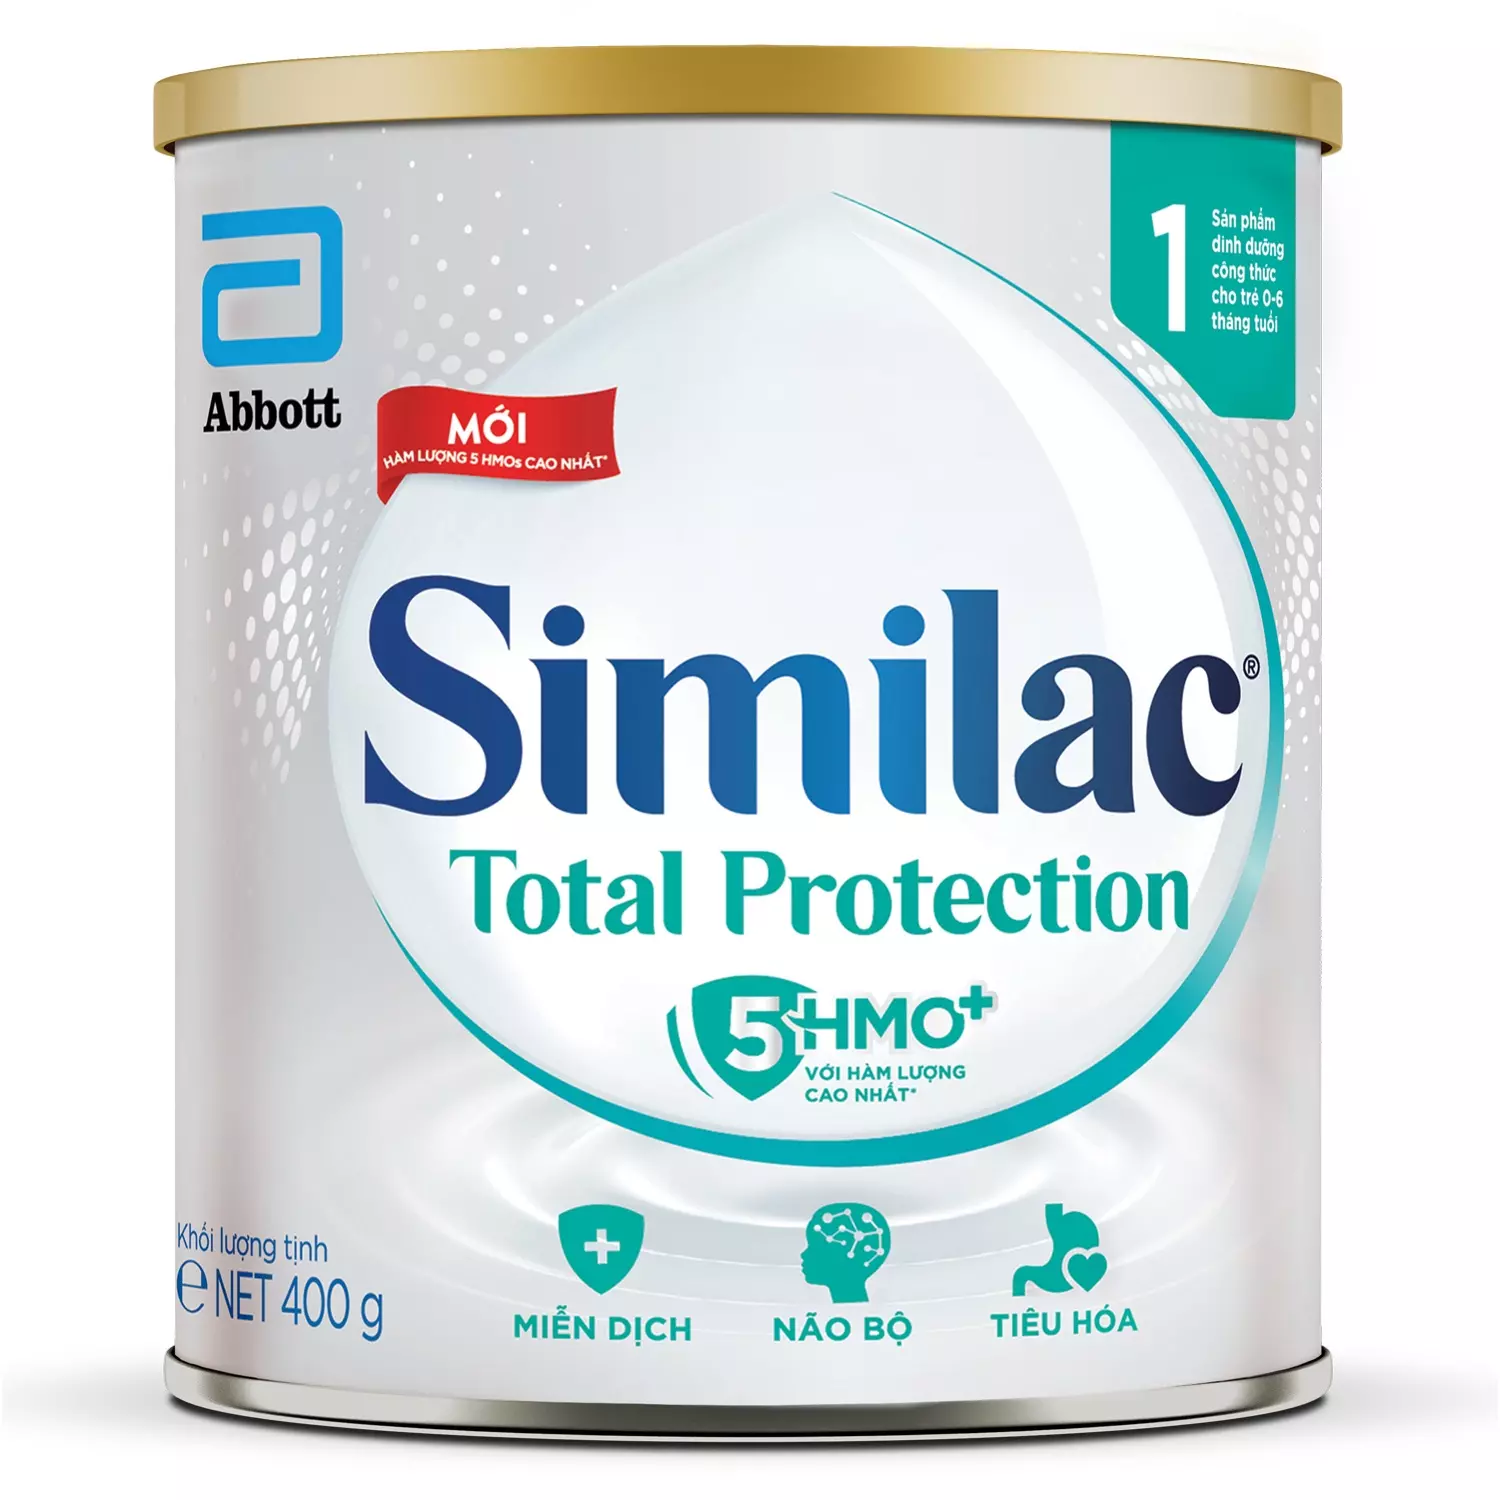 Sữa Similac Total Protection số 1 400g cho bé 0-6 tháng tuổi (Mẫu mới)